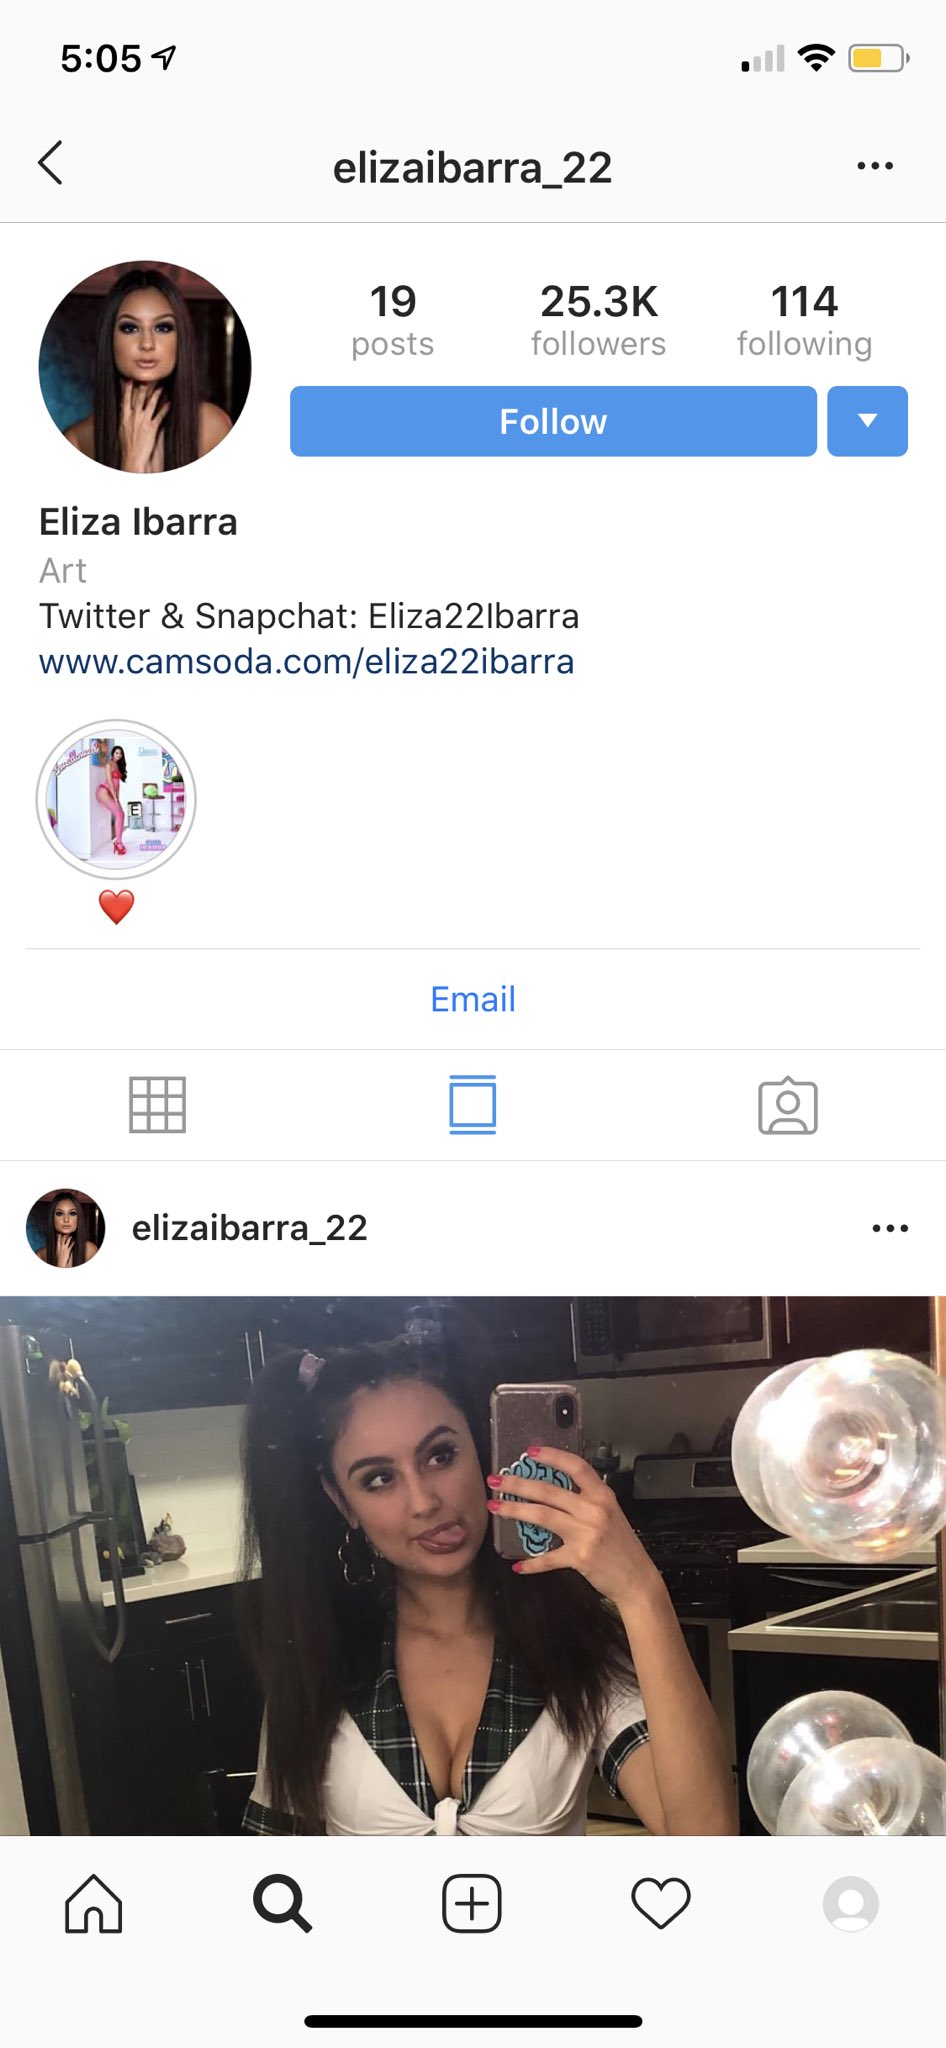 Eliza 22 ibarra instagram